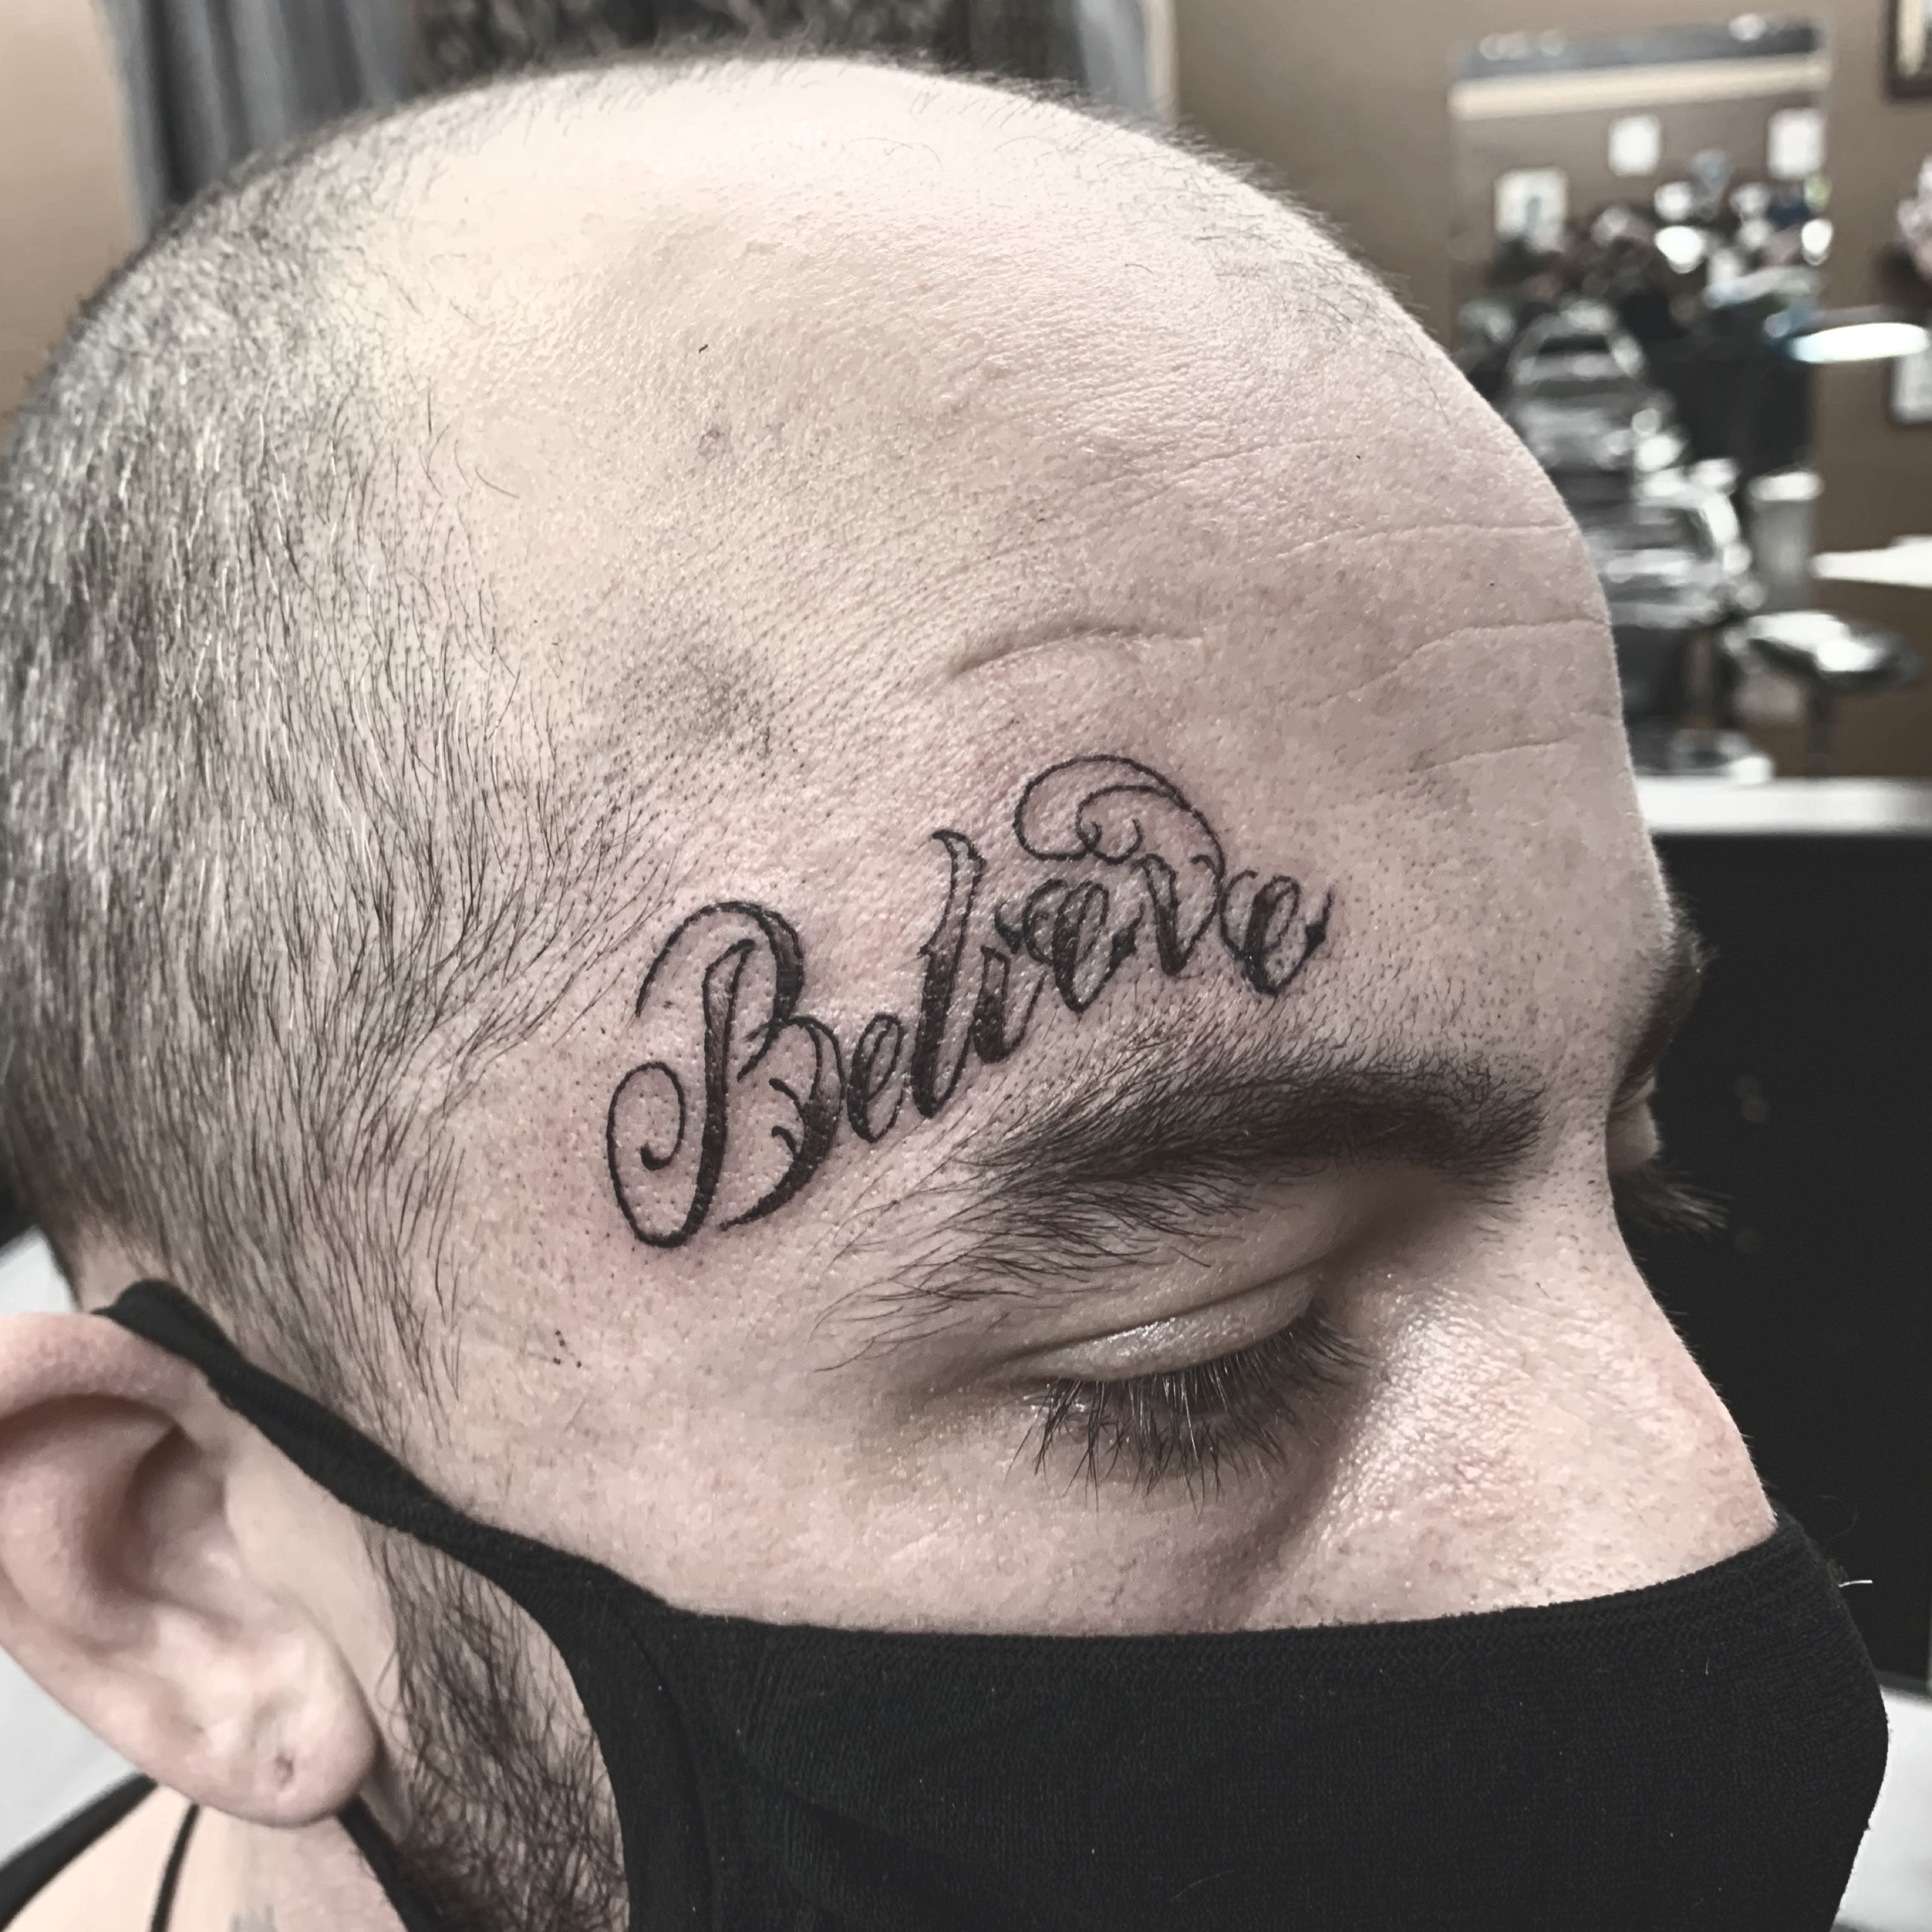 Believe. Lettering tattoo. Believe tattoo | Tatuaggi